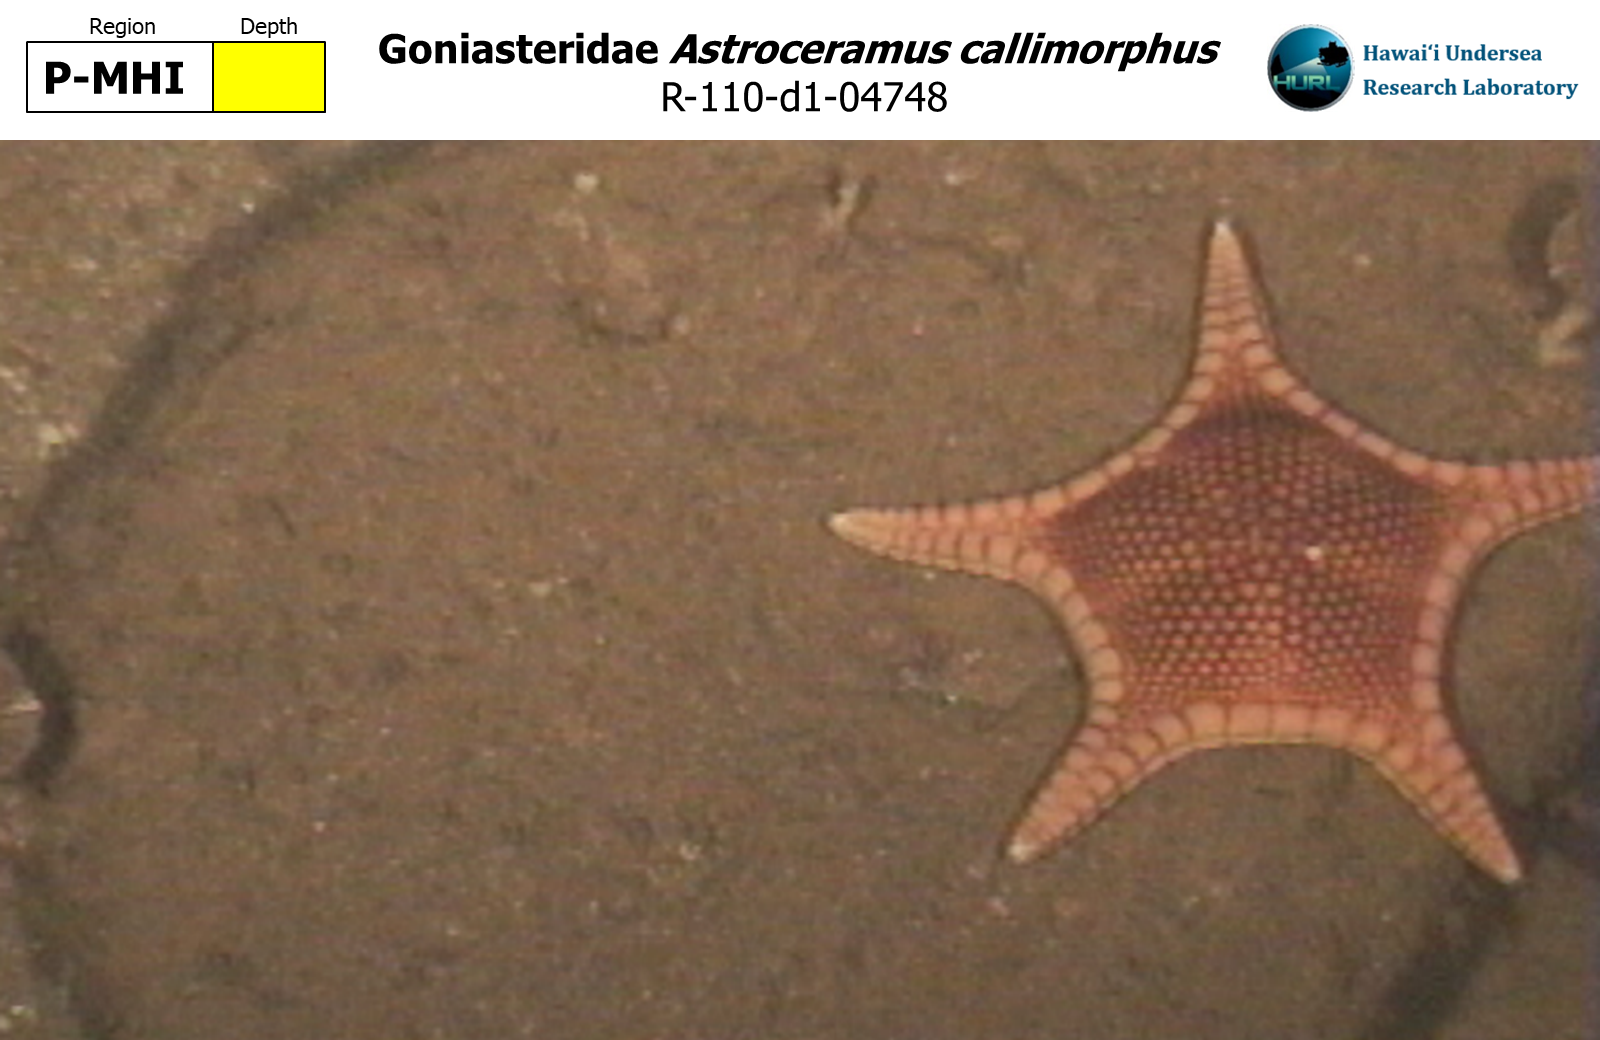 Astroceramus callimorphus